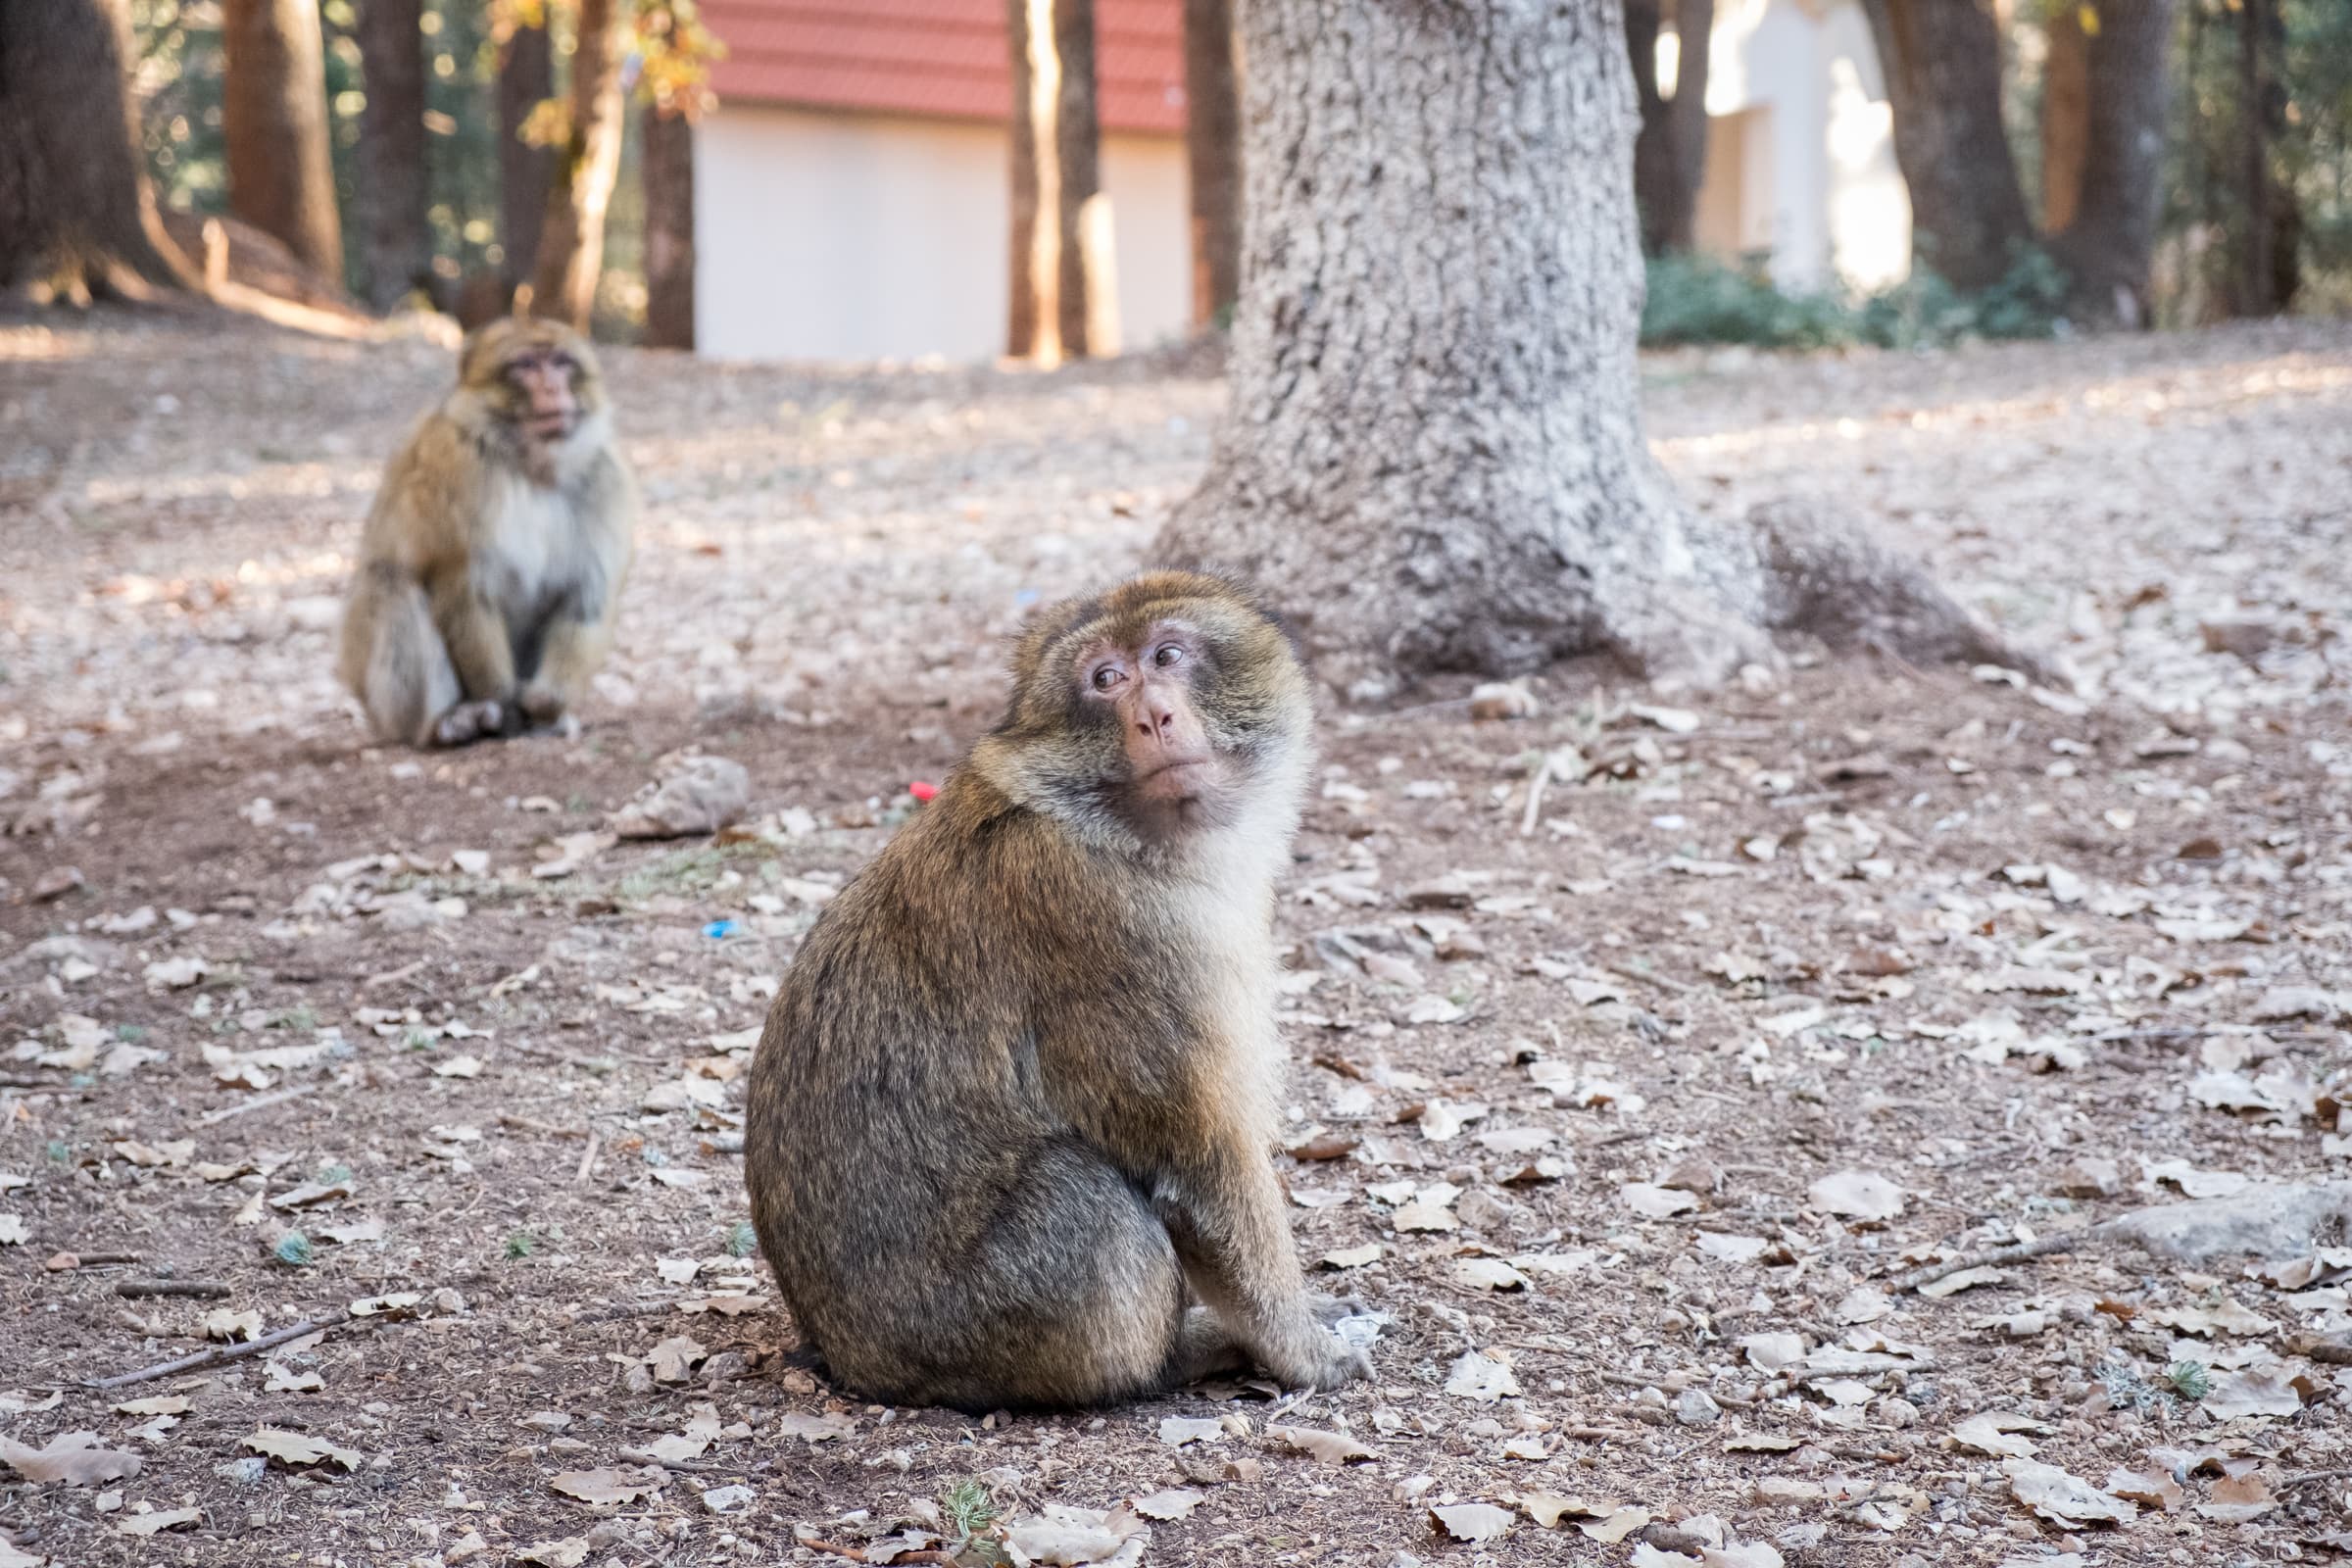 Monkeys in Ifrane, Morocco